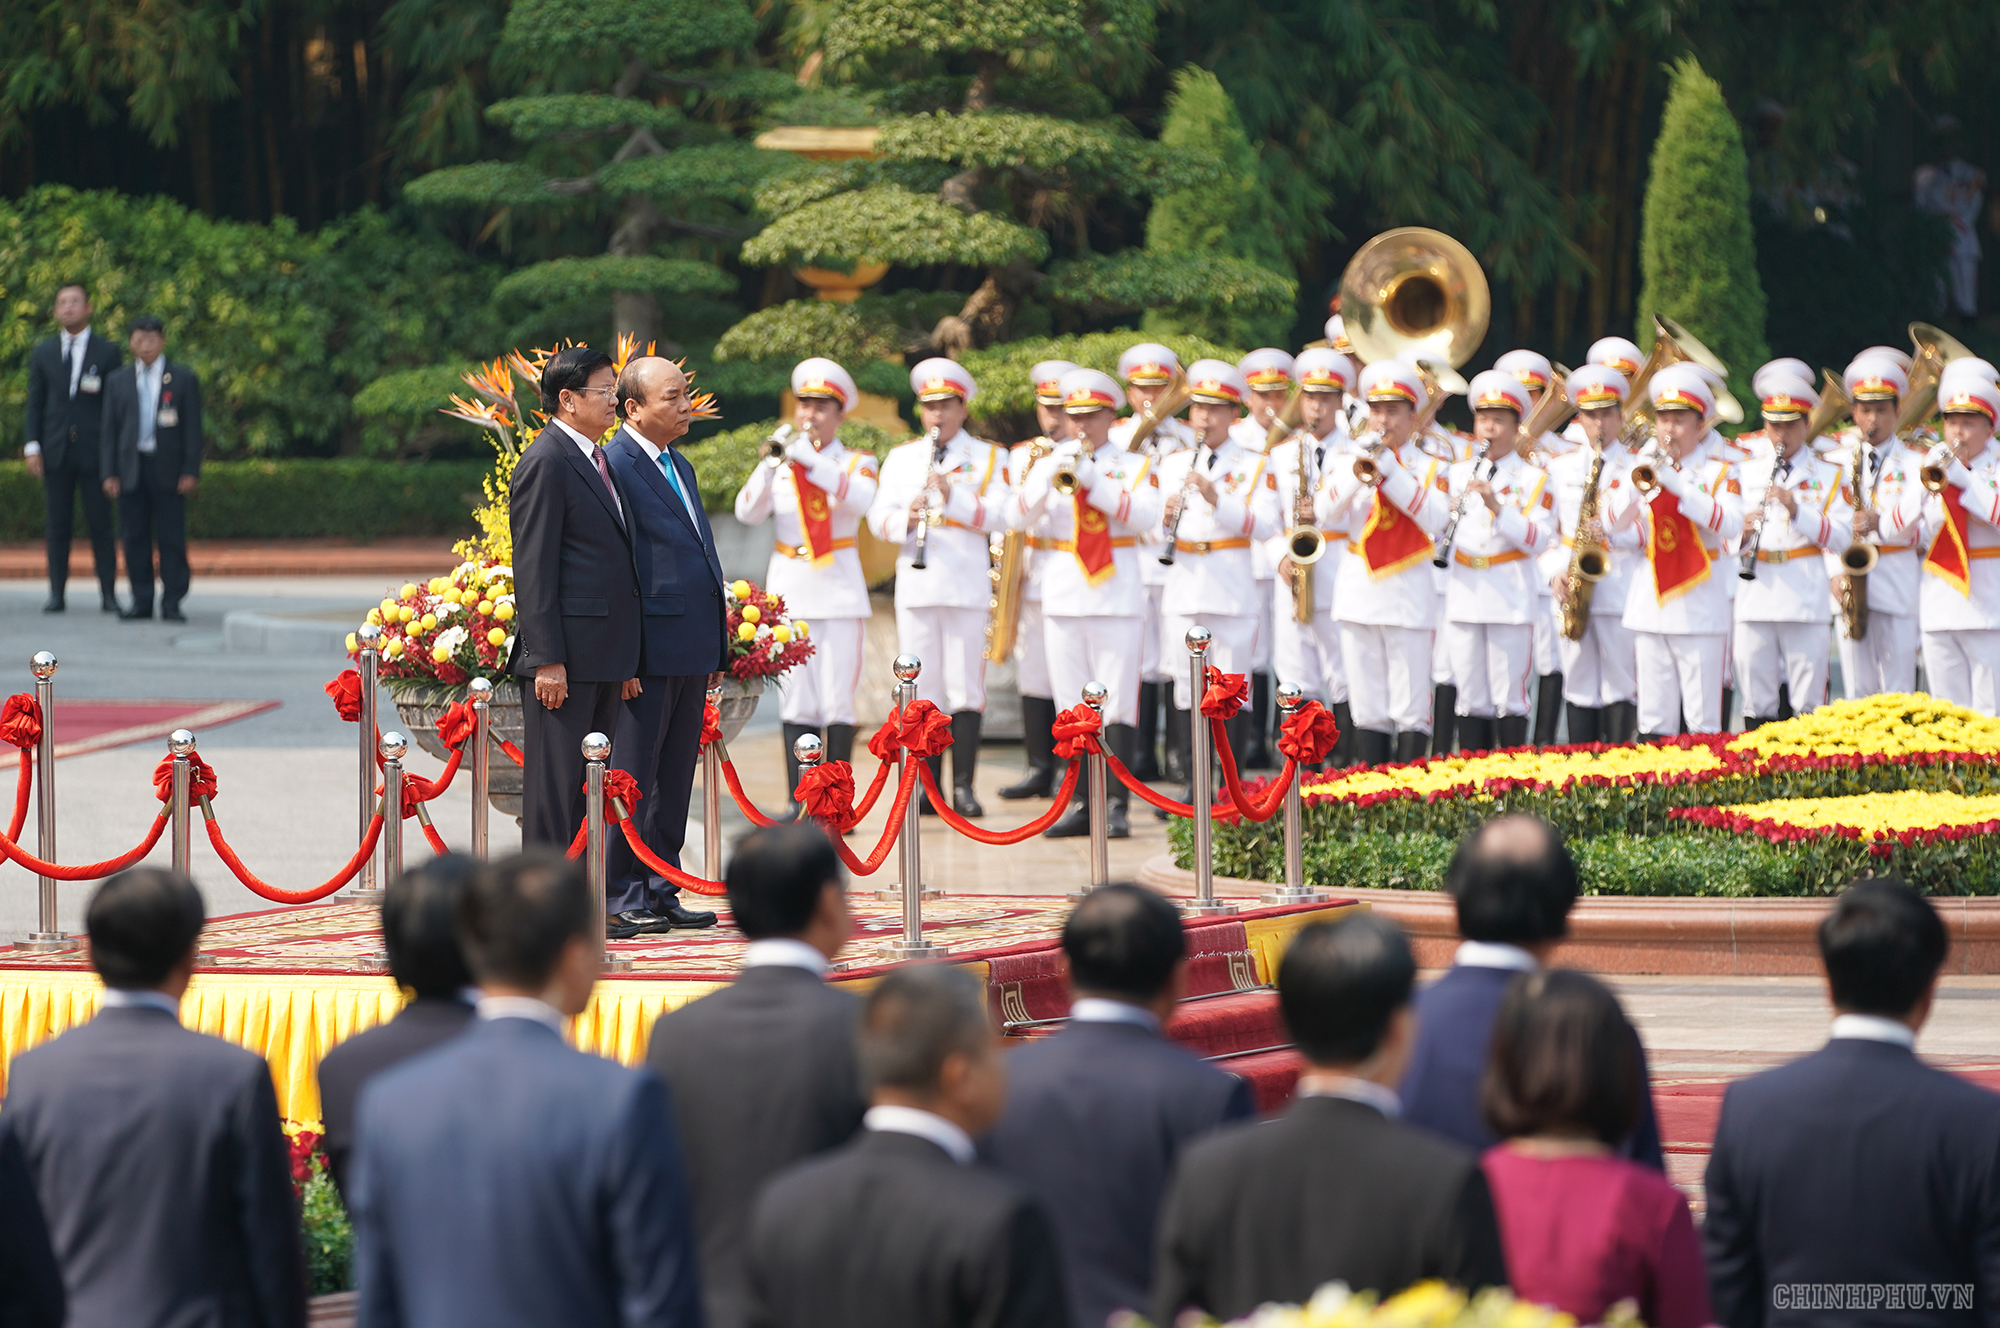 Thủ tướng Nguyễn Xuân Phúc đón, hội đàm với Thủ tướng Lào